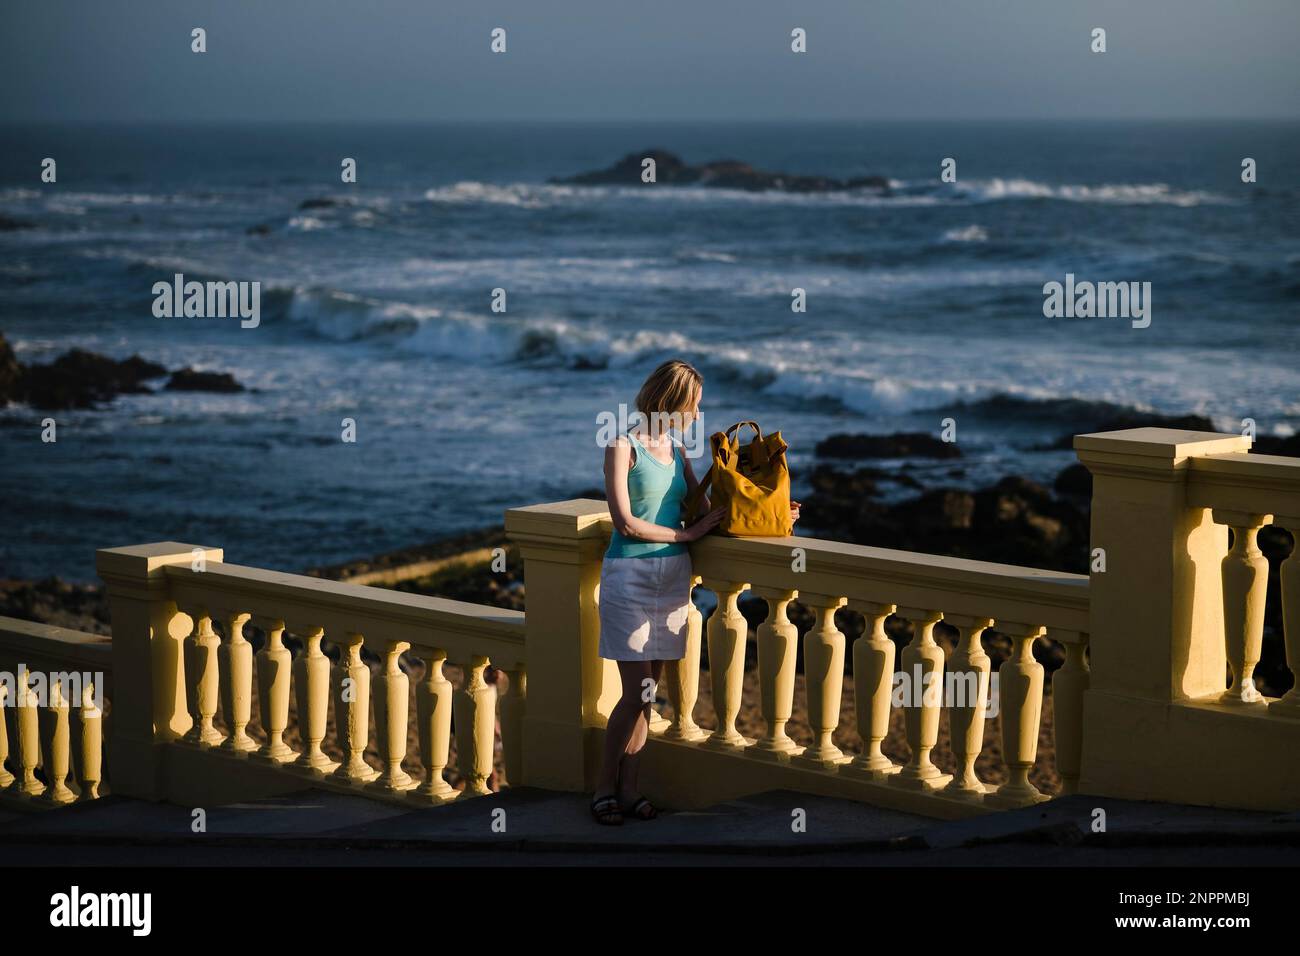 Una donna con uno zaino giallo si trova sul lungomare Atlantico, Porto, Portogallo. Foto Stock